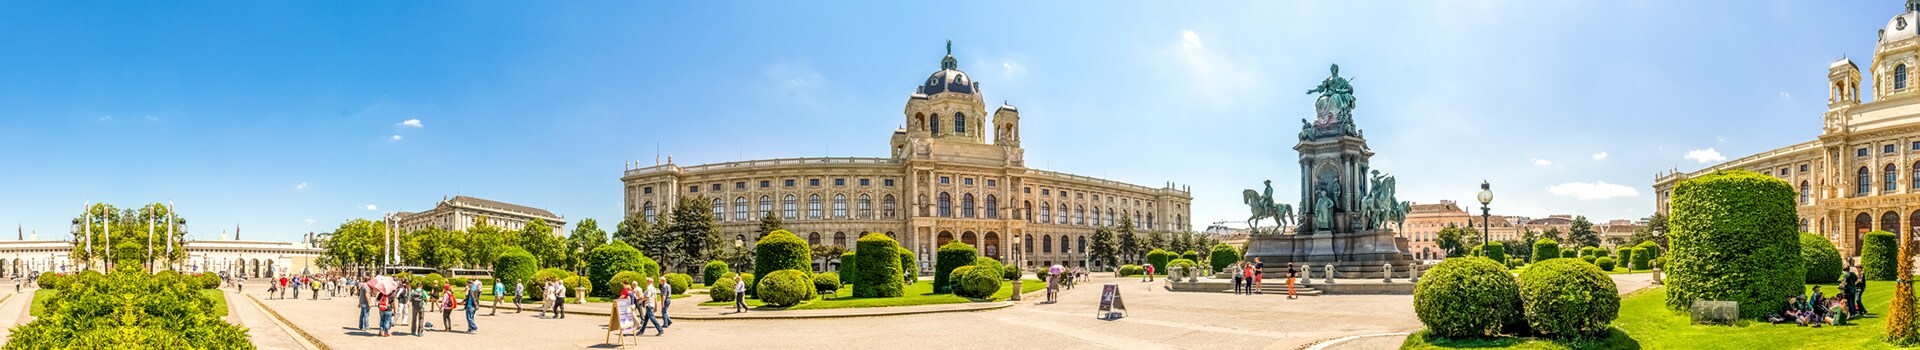 Leipzig - Wien